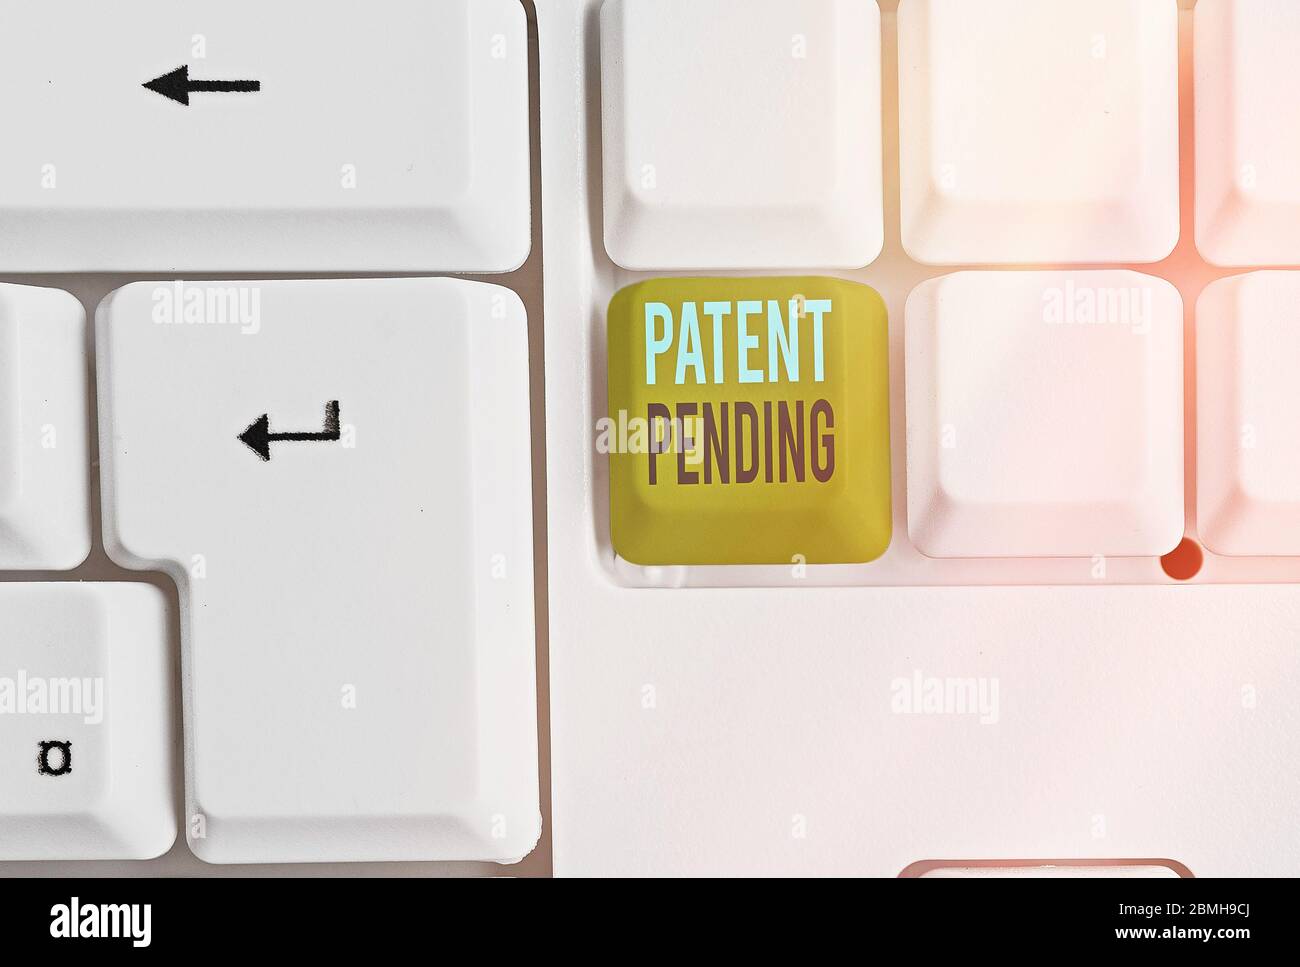 Schreiben Sie einen Hinweis mit dem Hinweis auf das anhängige Patent Geschäftskonzept für Antrag bereits eingereicht, aber noch nicht gewährt Verfolgung Schutz Stockfoto